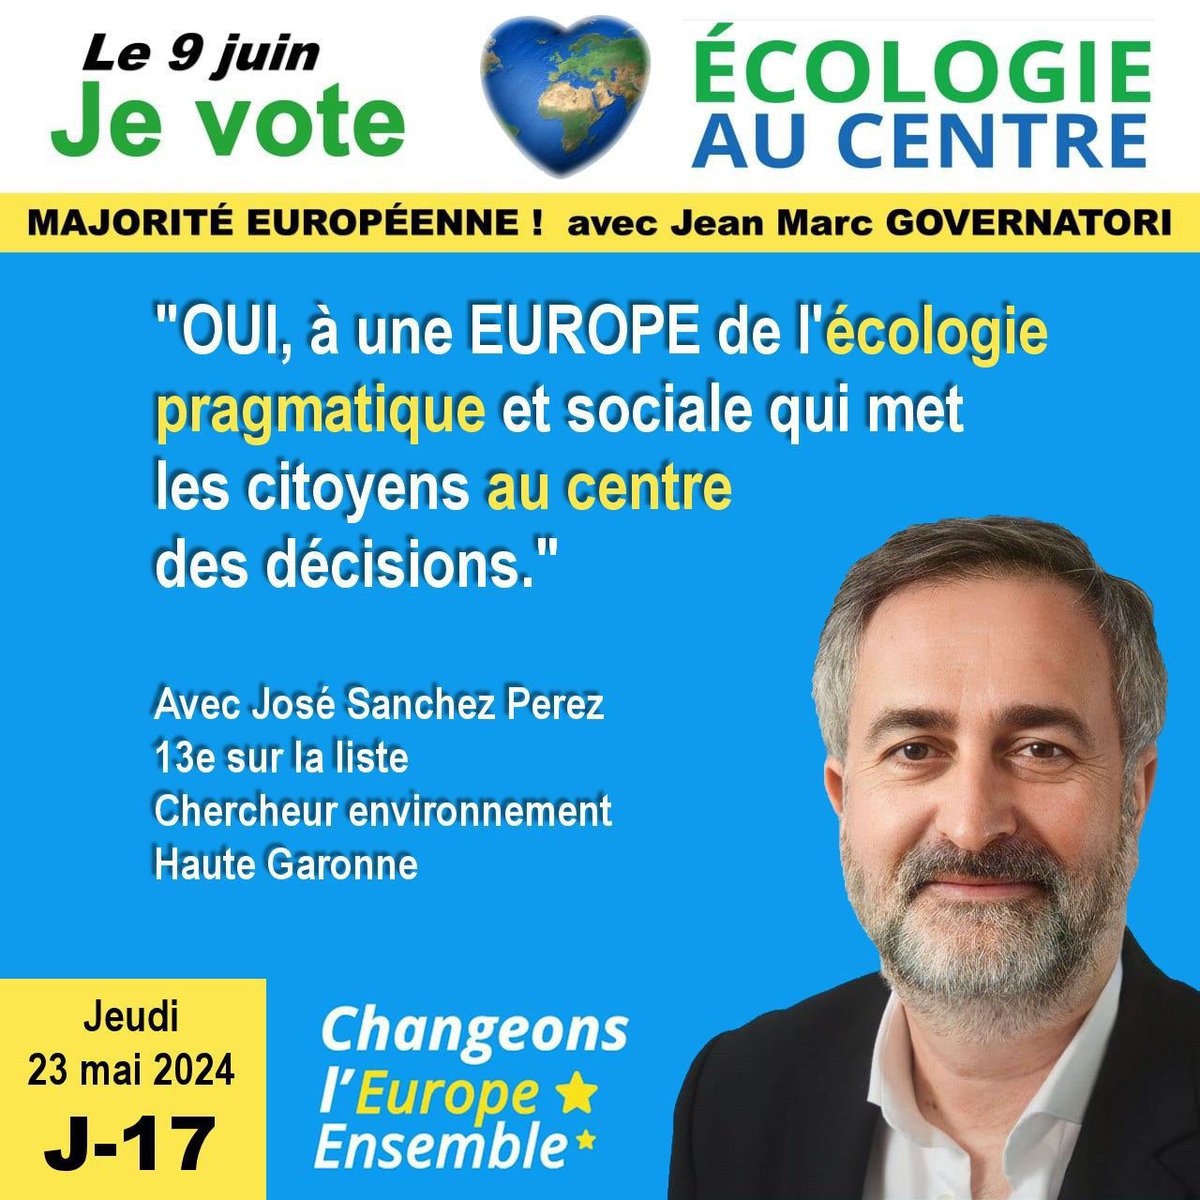 ➡️PRESERVER NOTRE ENVIRONNEMENT, NOTRE PATRIMOINE, NOS VALEURS ET RECREER DU LIEN, ELABORER ENSEMBLE DES SOLUTIONS JUSTES.➡️AVEC VOUS ✅️ #ÉcologieAuCentre #ElectionsEuropéennes2024 #ChangeonsLEurope ✅️